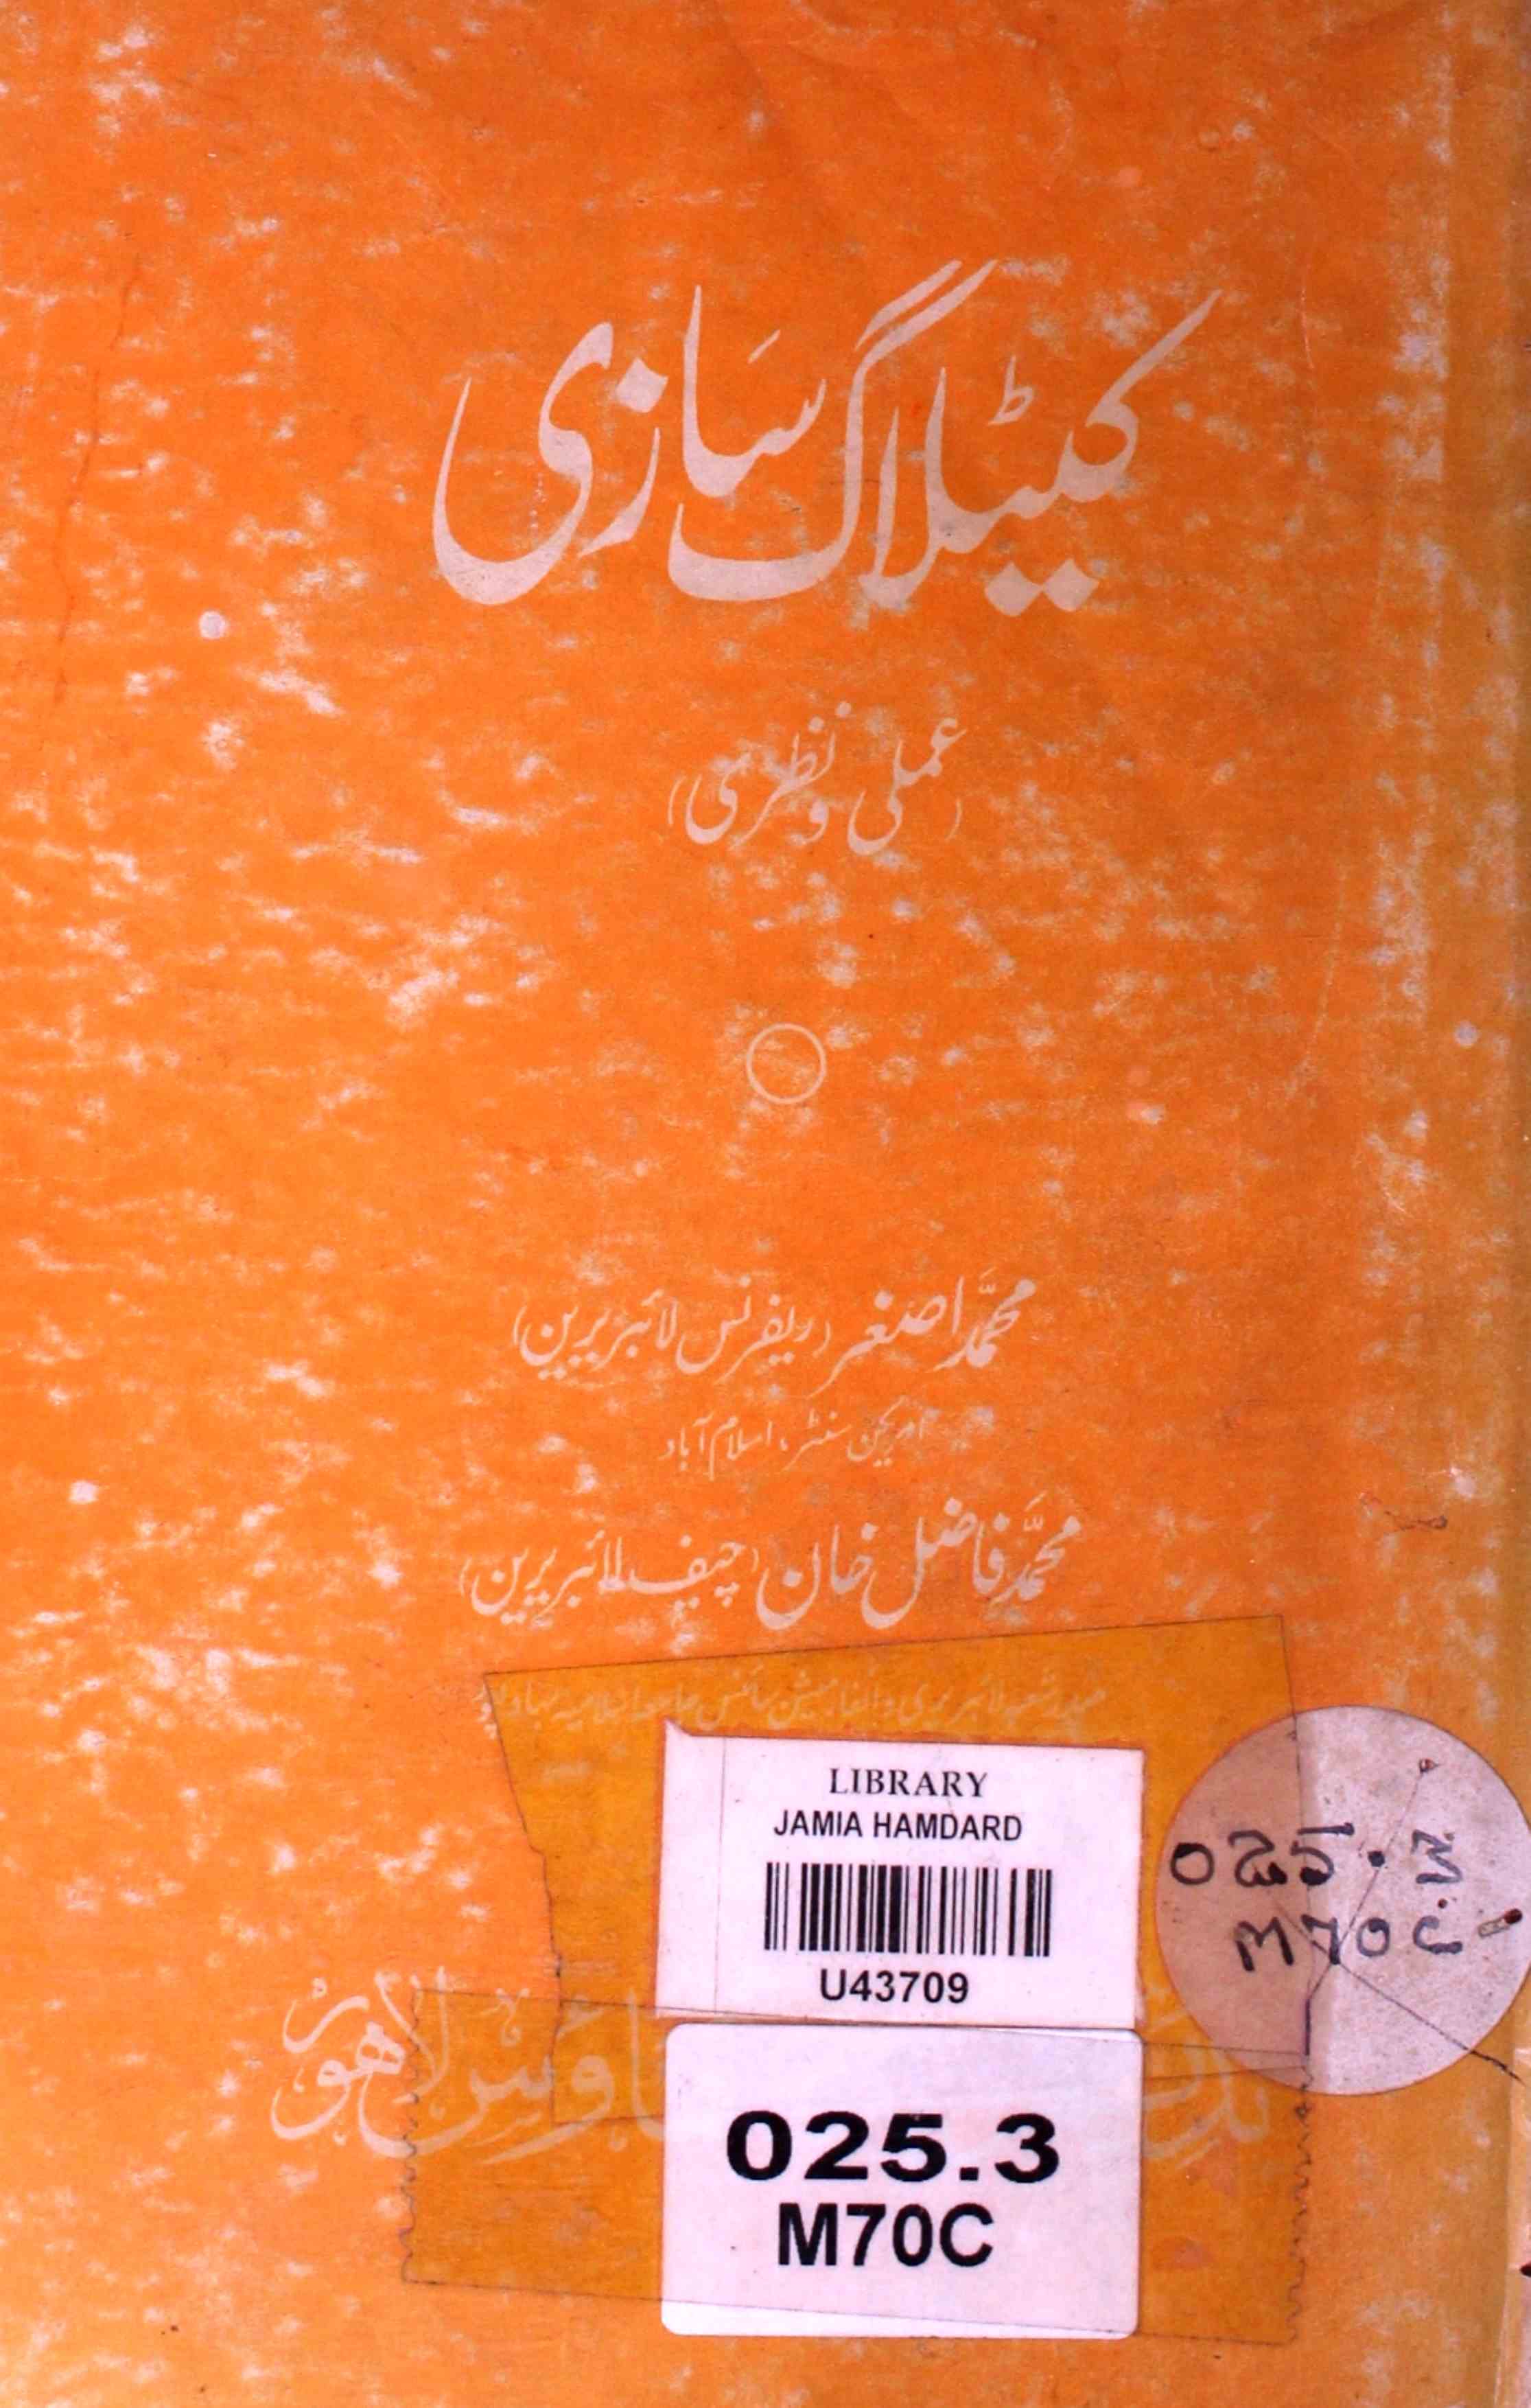 Catalogue Sazi (Amali-o-Nazri)